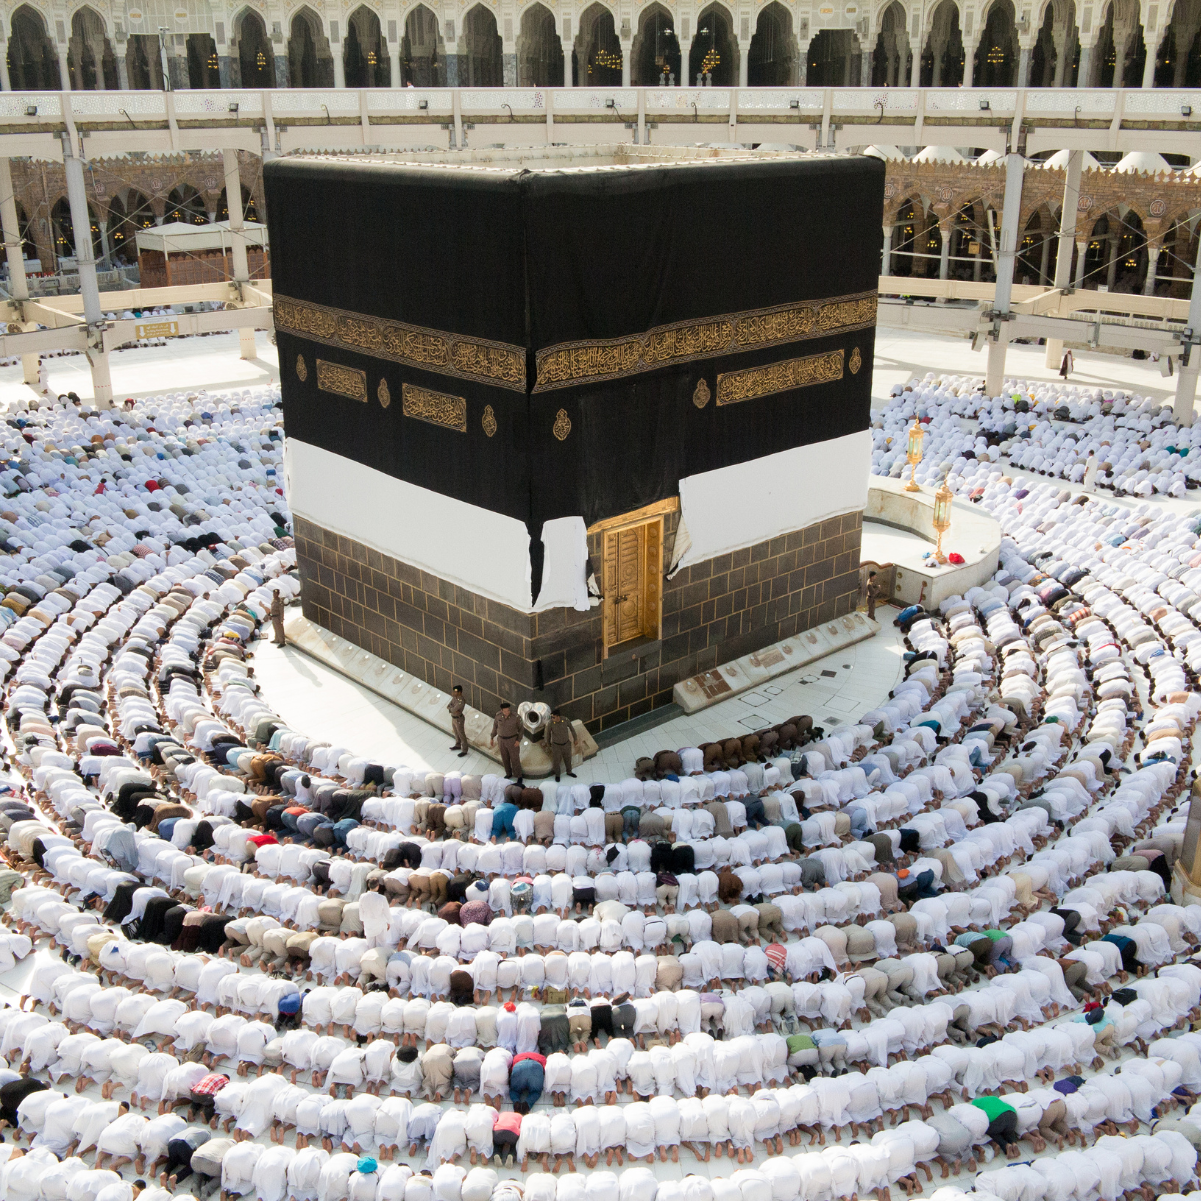 La Mecque : découvrez cette ville sainte de l'Islam